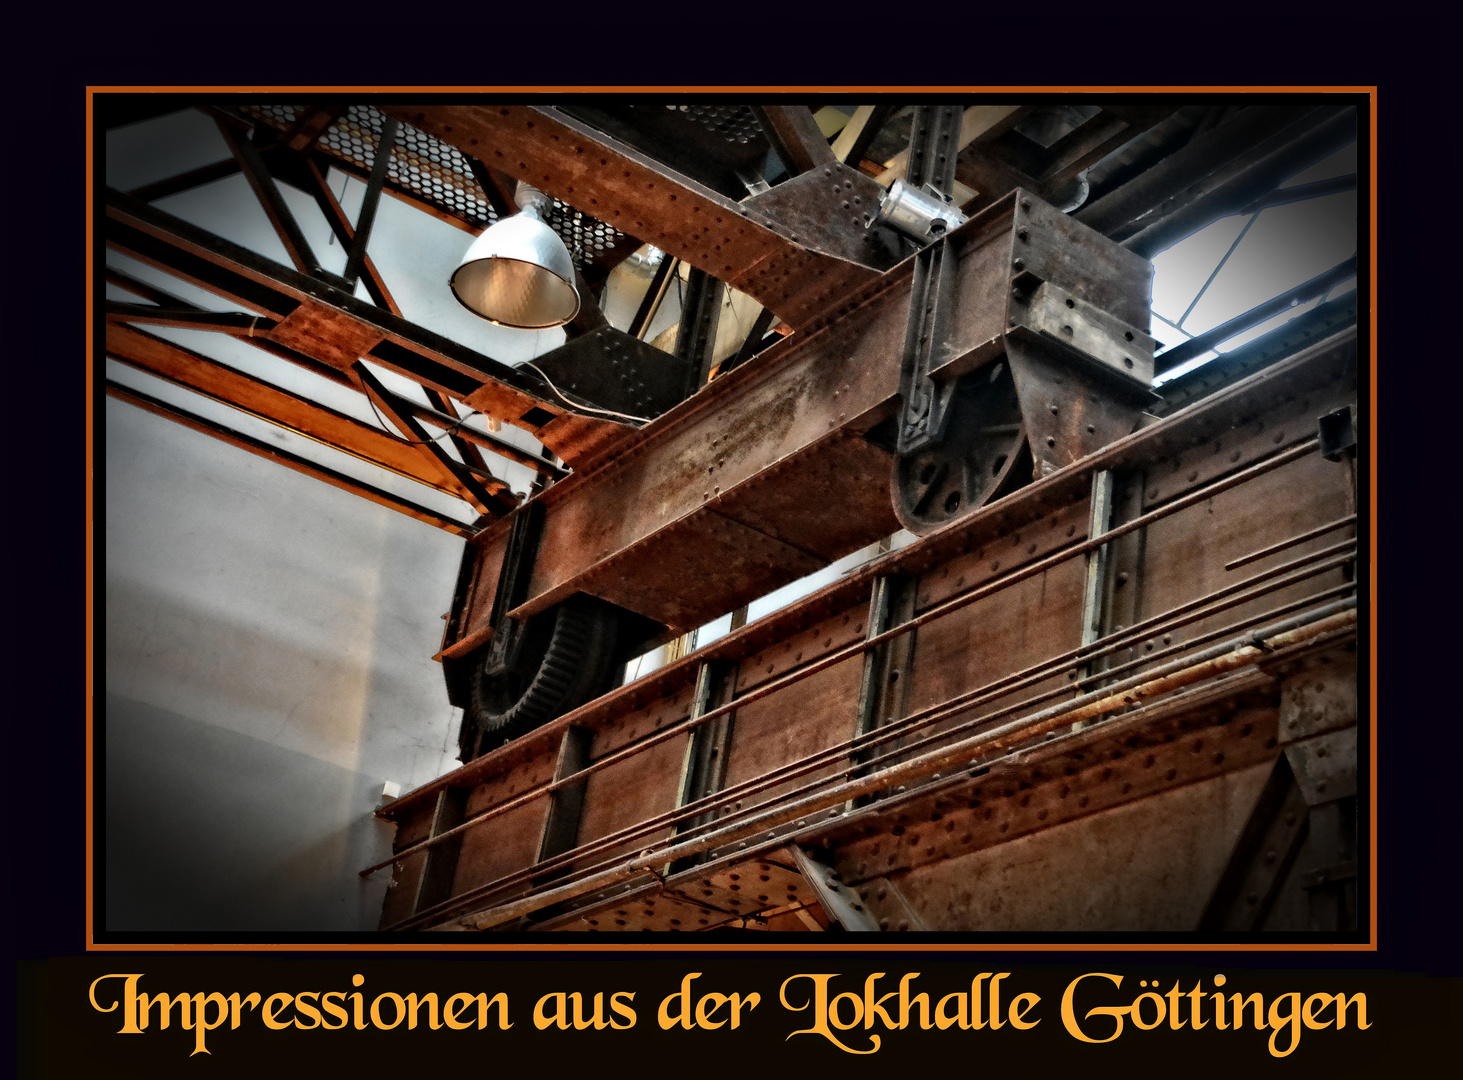 Impressionen aus der Lokhalle in Göttingen - Fahrgestell eines Deckenkrans